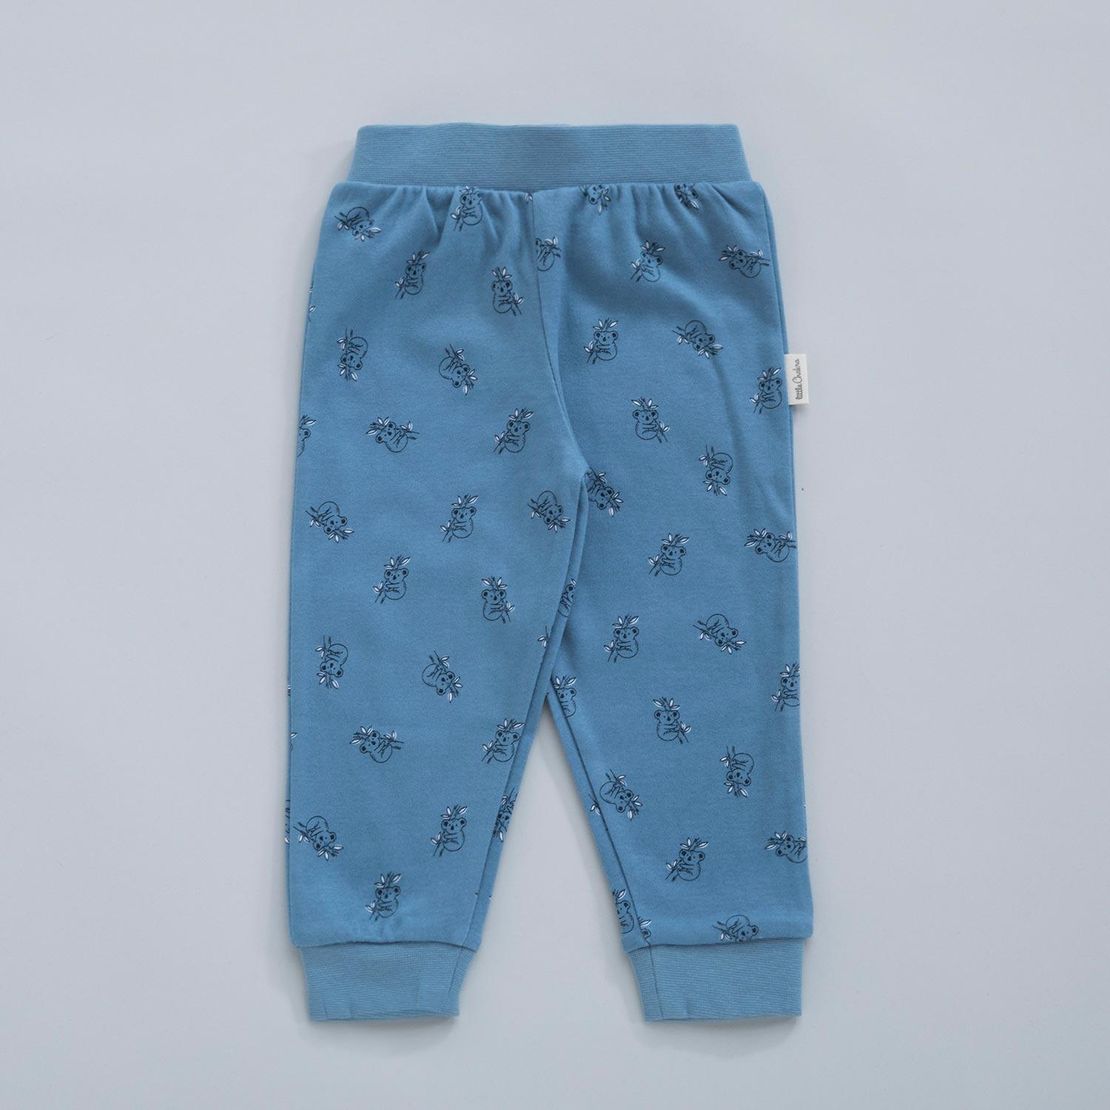 Дитяча піжама KOALA 5-6 років, блакитна